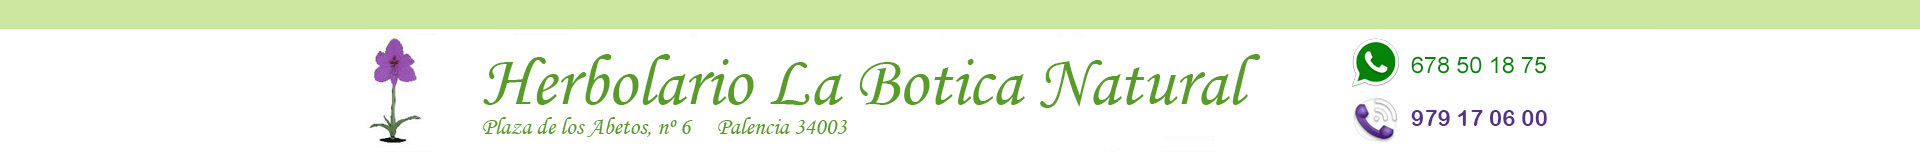 Herbolario online Palencia La Botica Natural, Cosemética ecológica, higiene ecológica, limpieza ecológica, oulet